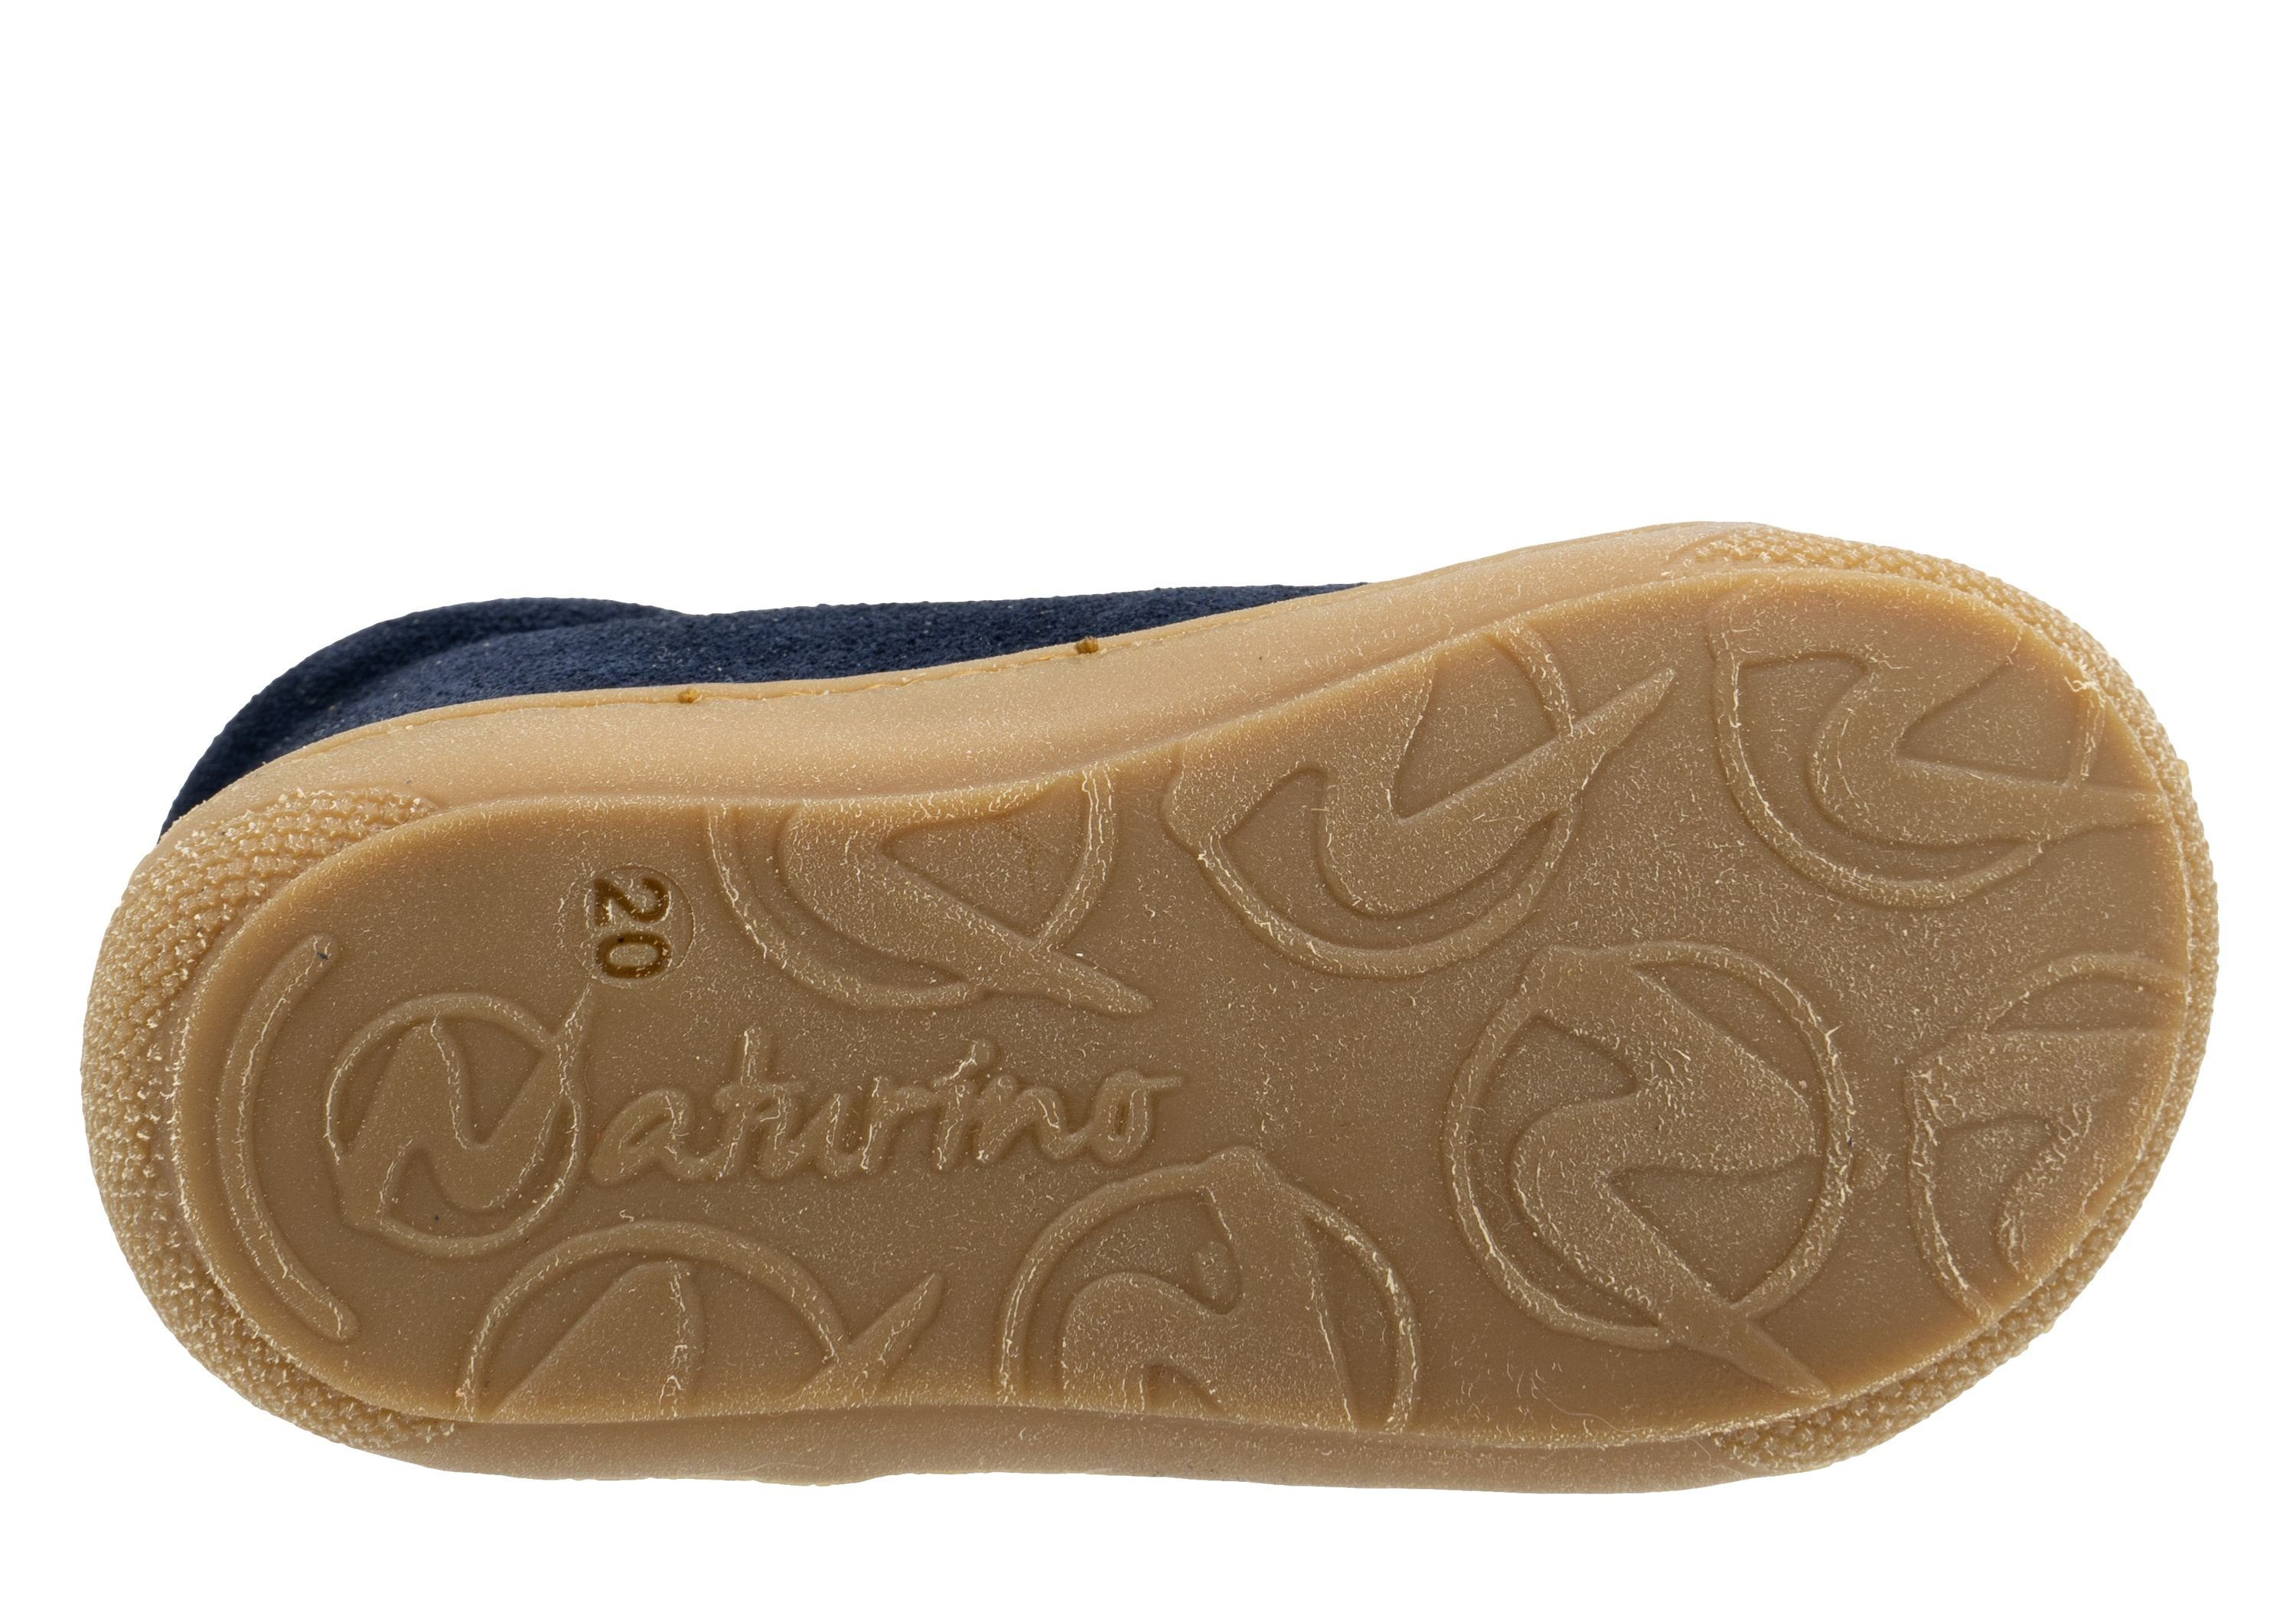 Naturino Naturino Cocoon Schuhe Lederfutter 1C25 Lauflernschuhe mit Lauflernschuh